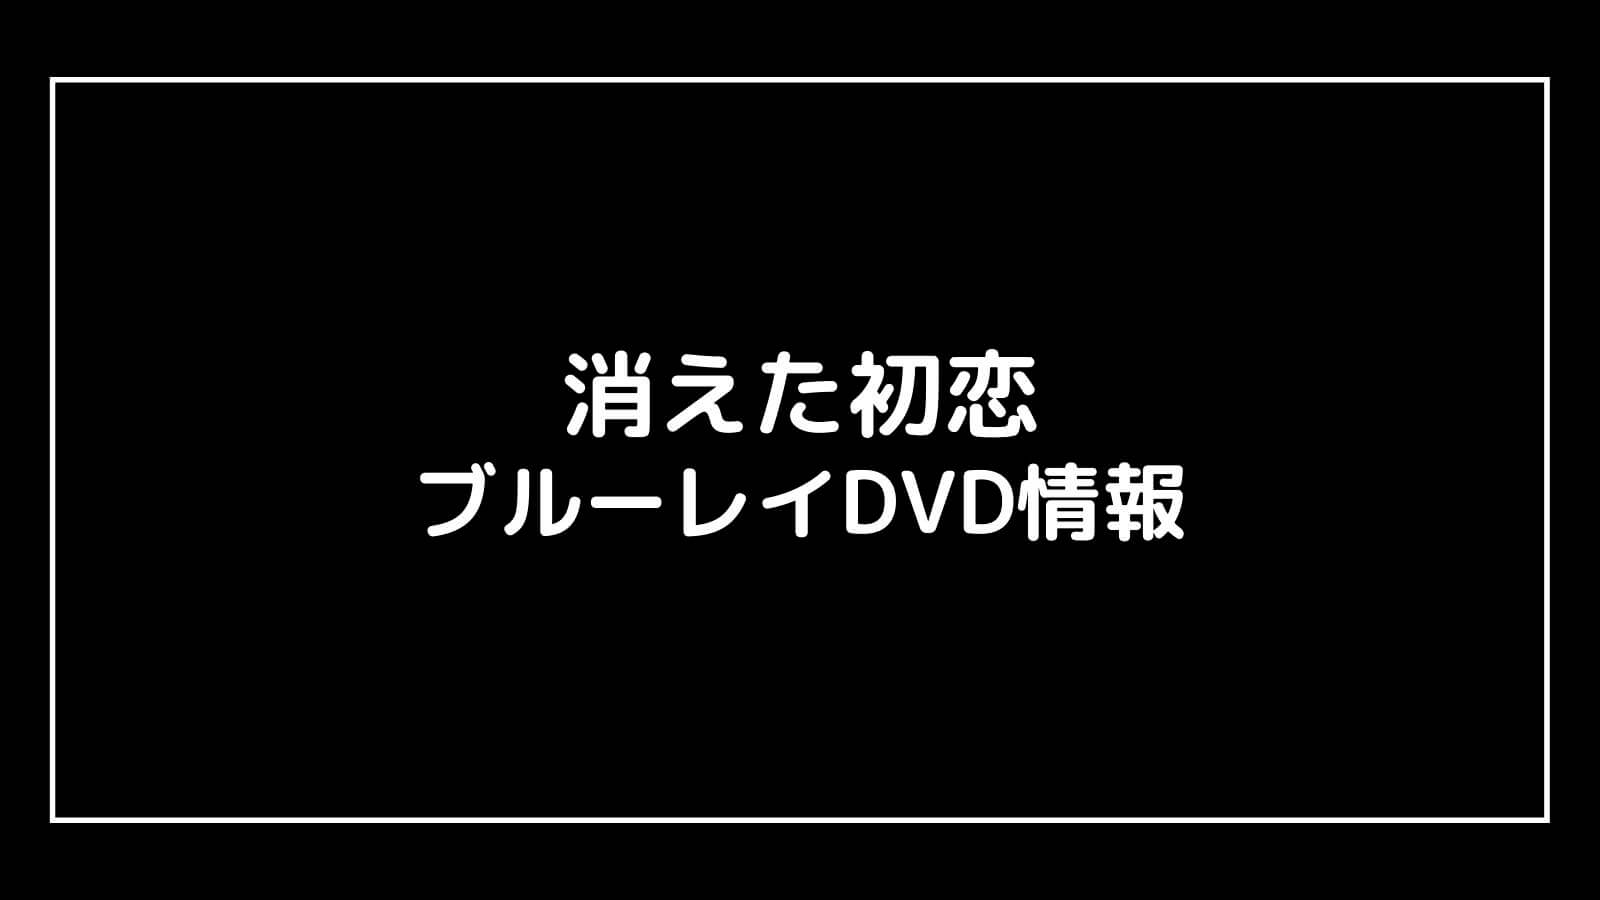 【DVD予約速報】消えた初恋の円盤発売日と特典情報まとめ